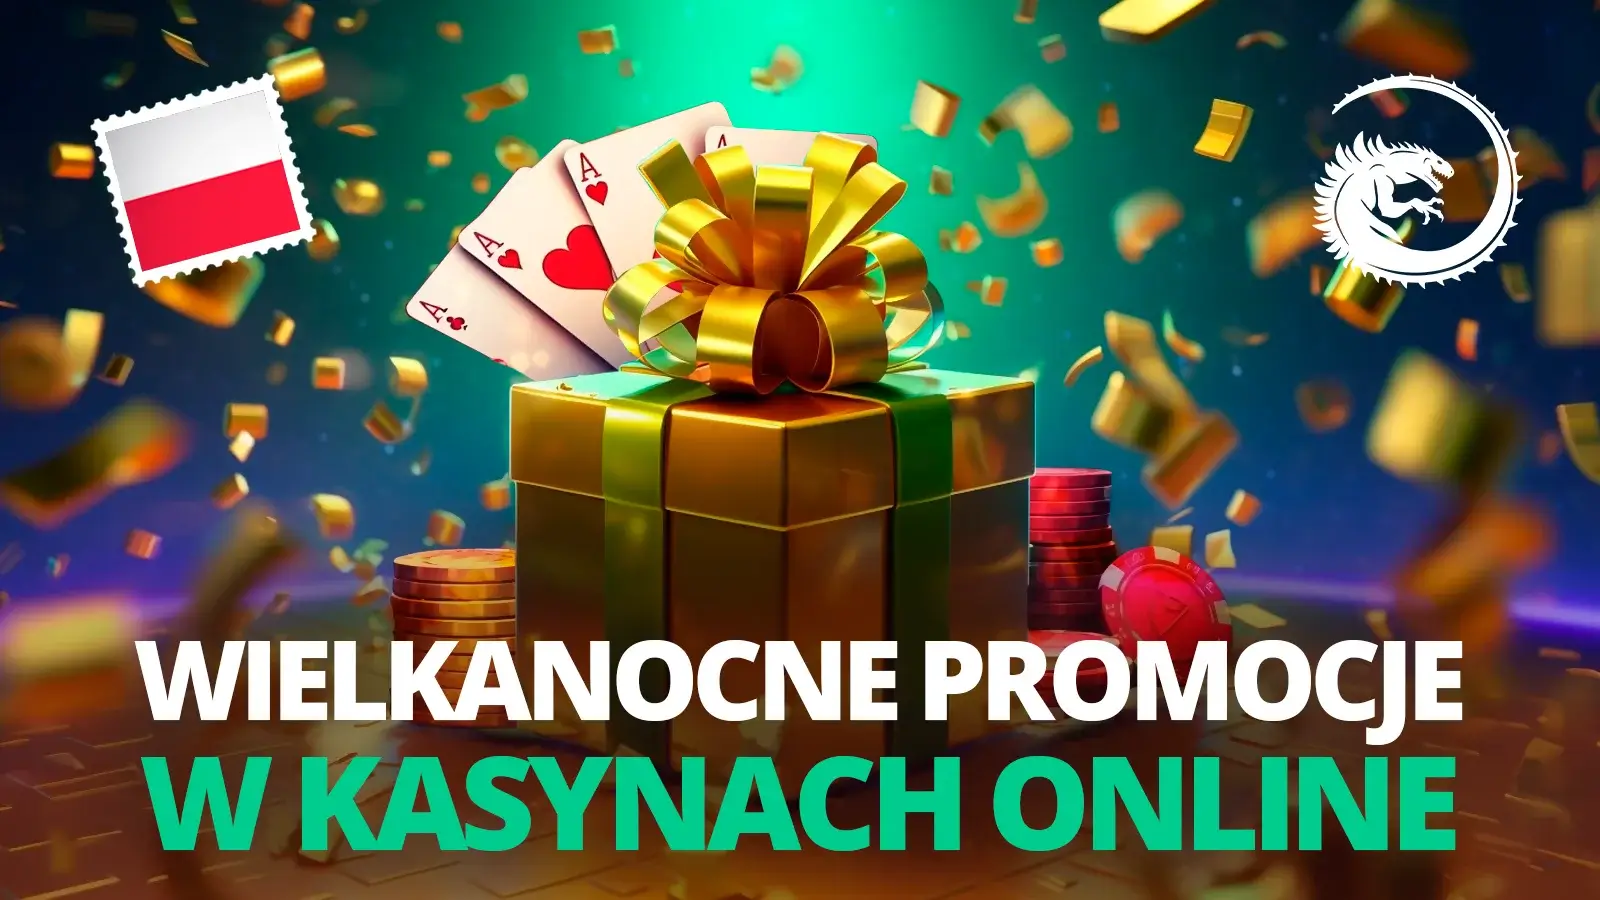 Wielkanocne promocje w kasynach online dla Polaków